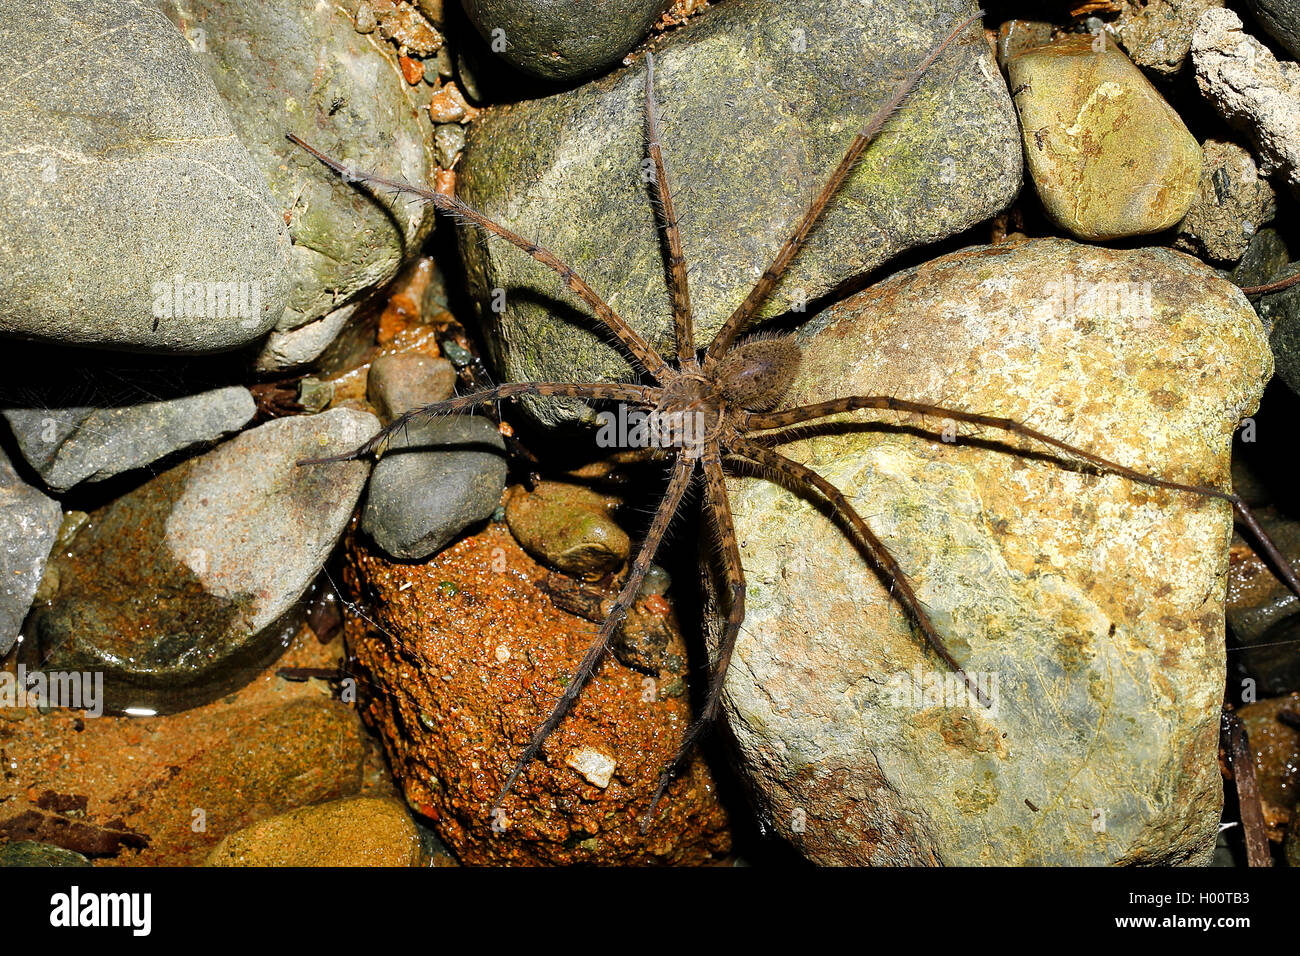 Spider (Trechalea rivière spec.), sur des pierres sur la rive, Costa Rica Banque D'Images